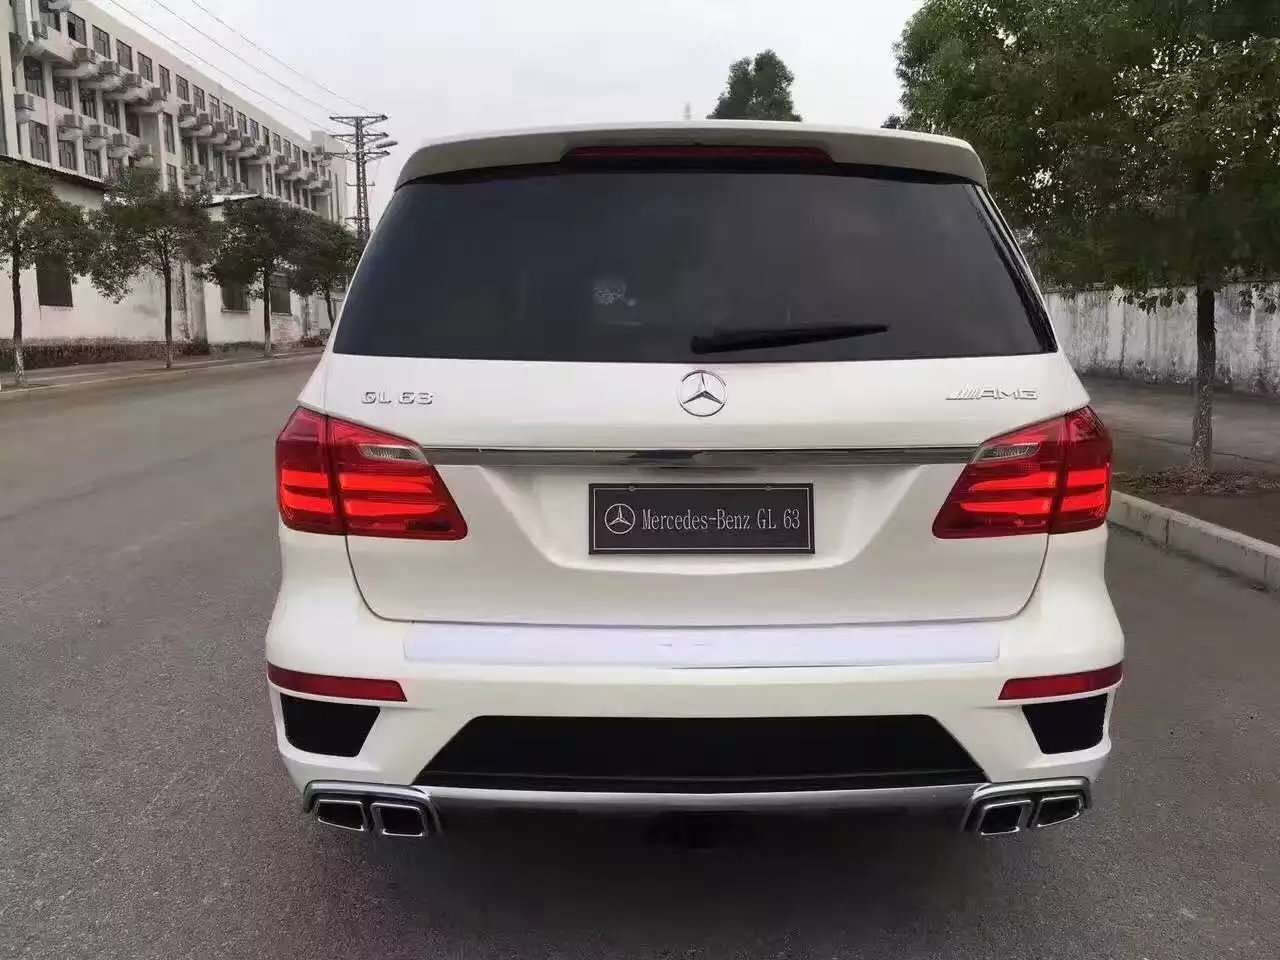 【大庆】2015款奔驰G63AMG 版,白色 价格68